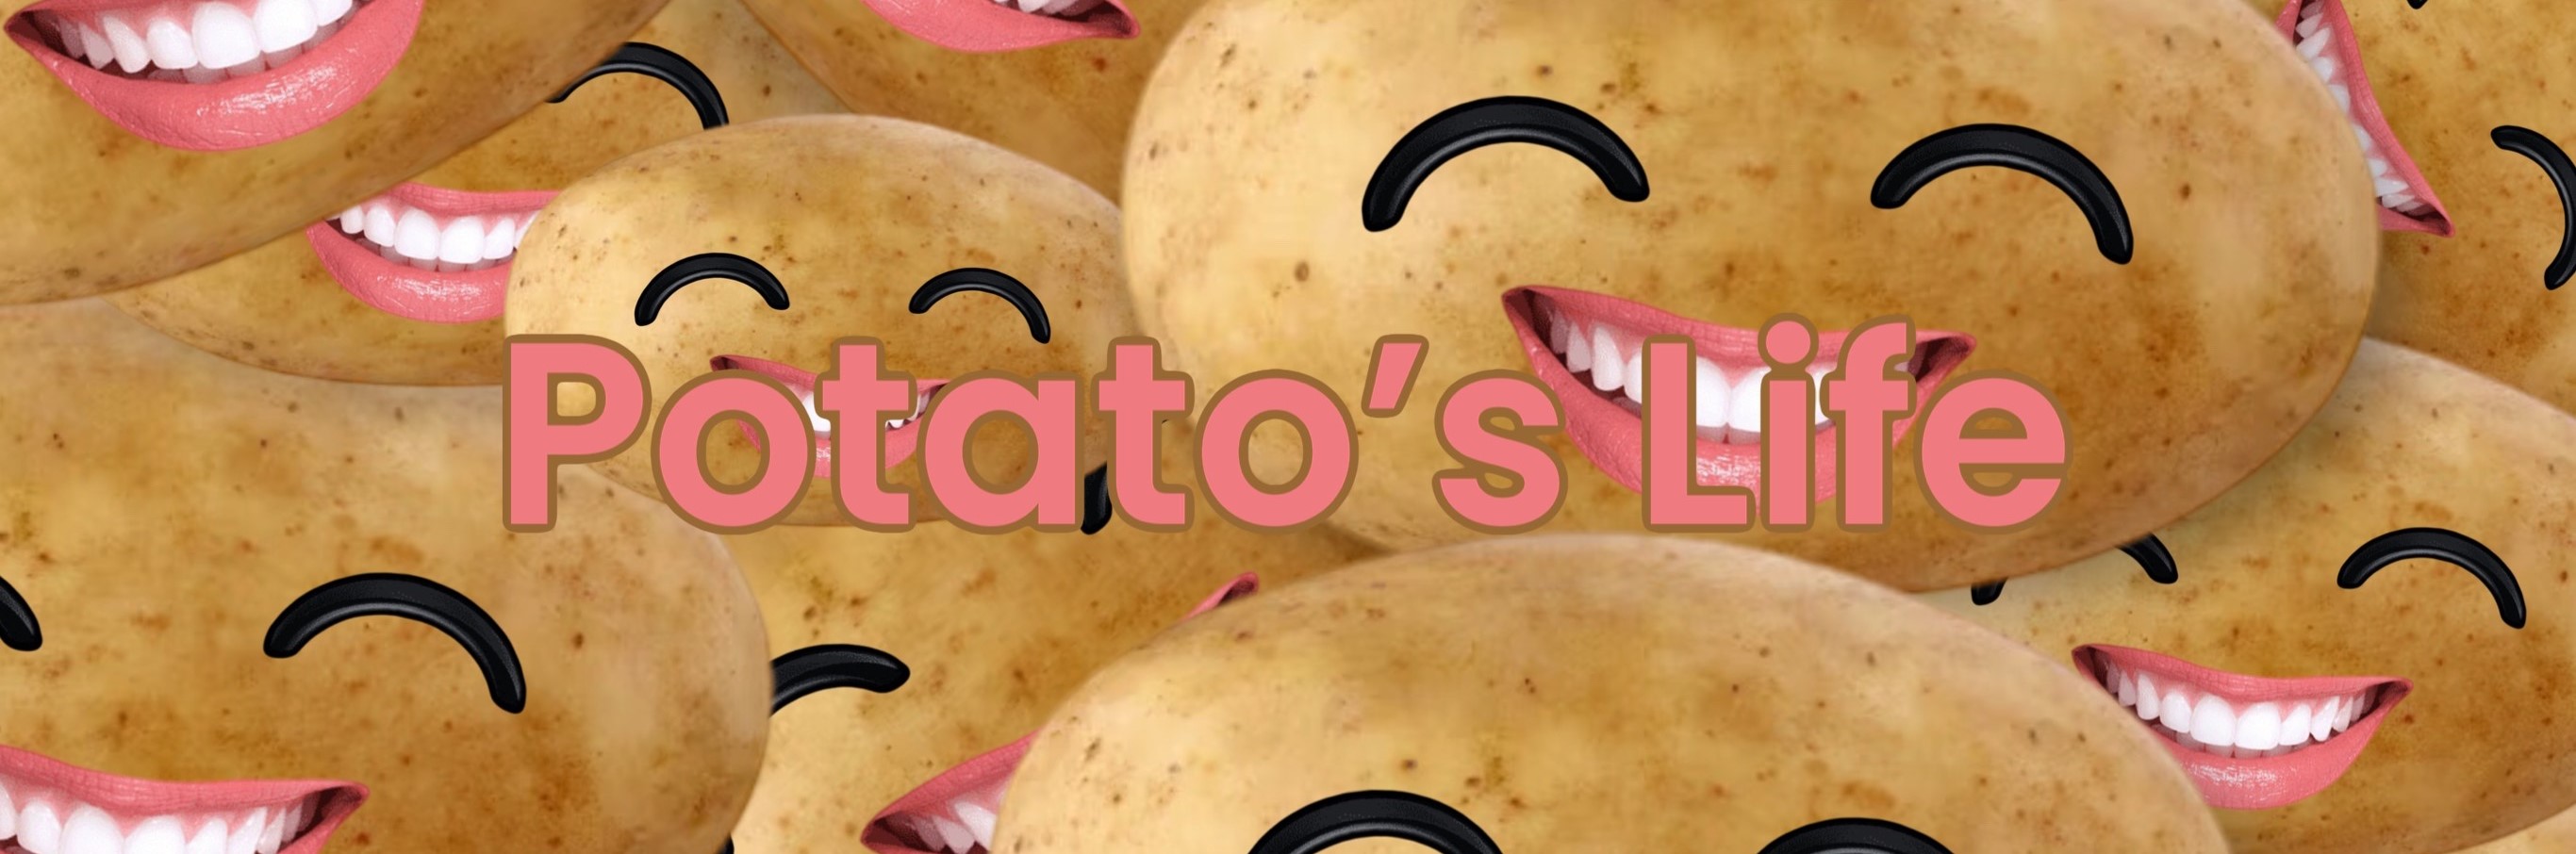 Potato's Life